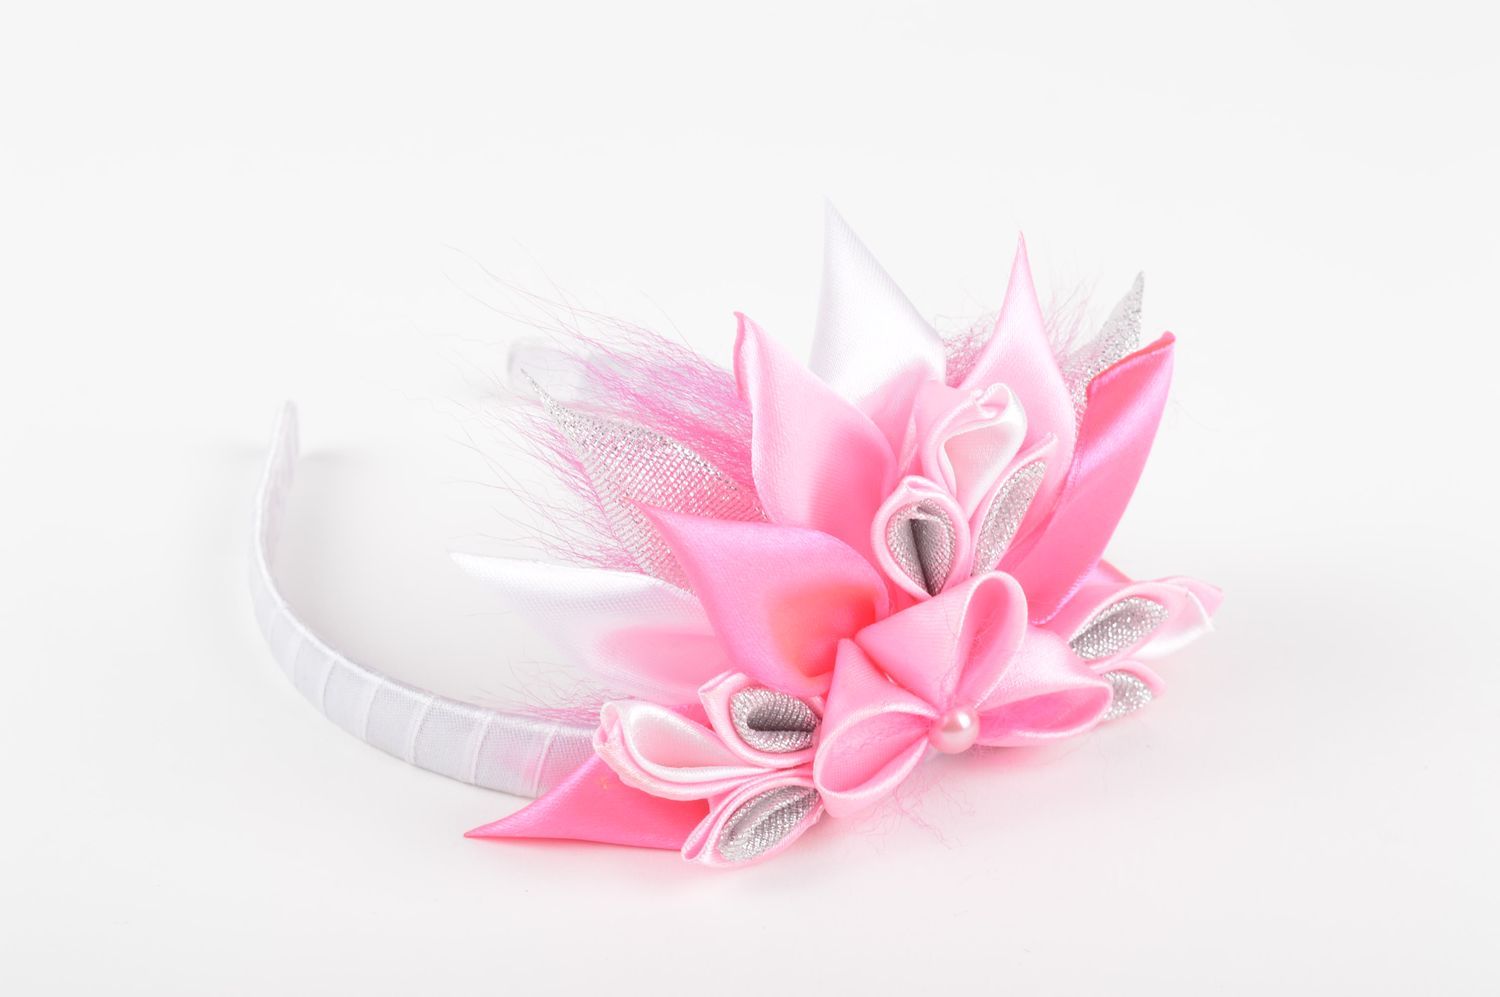 Обруч на голову ручной работы аксессуар для волос женский аксессуар с цветком фото 1